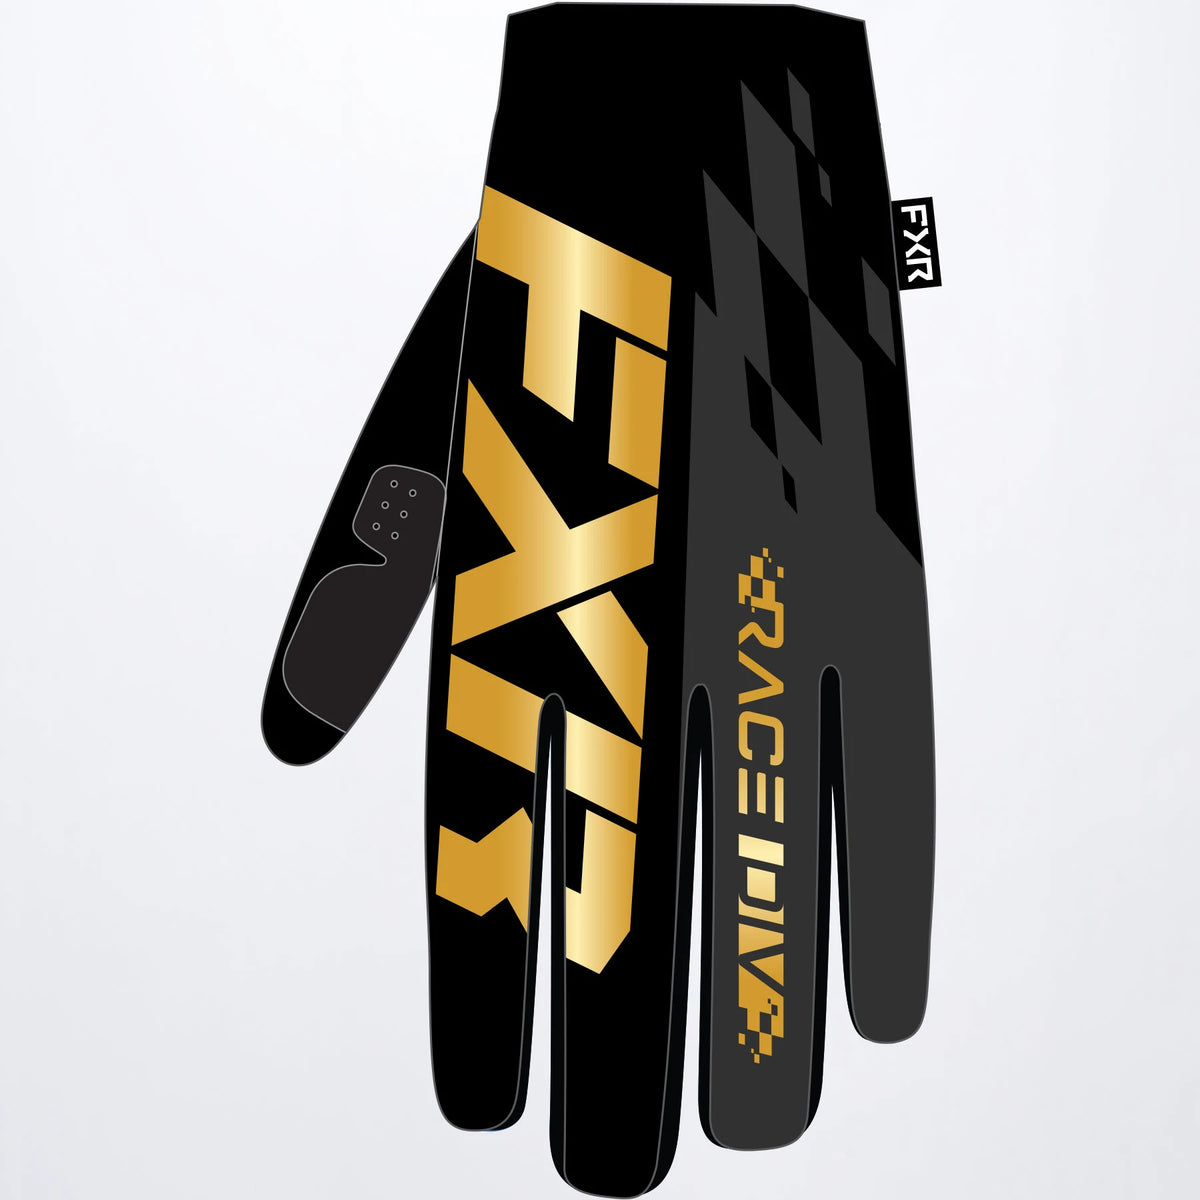 Pro-Fit Lite LE MX Glove